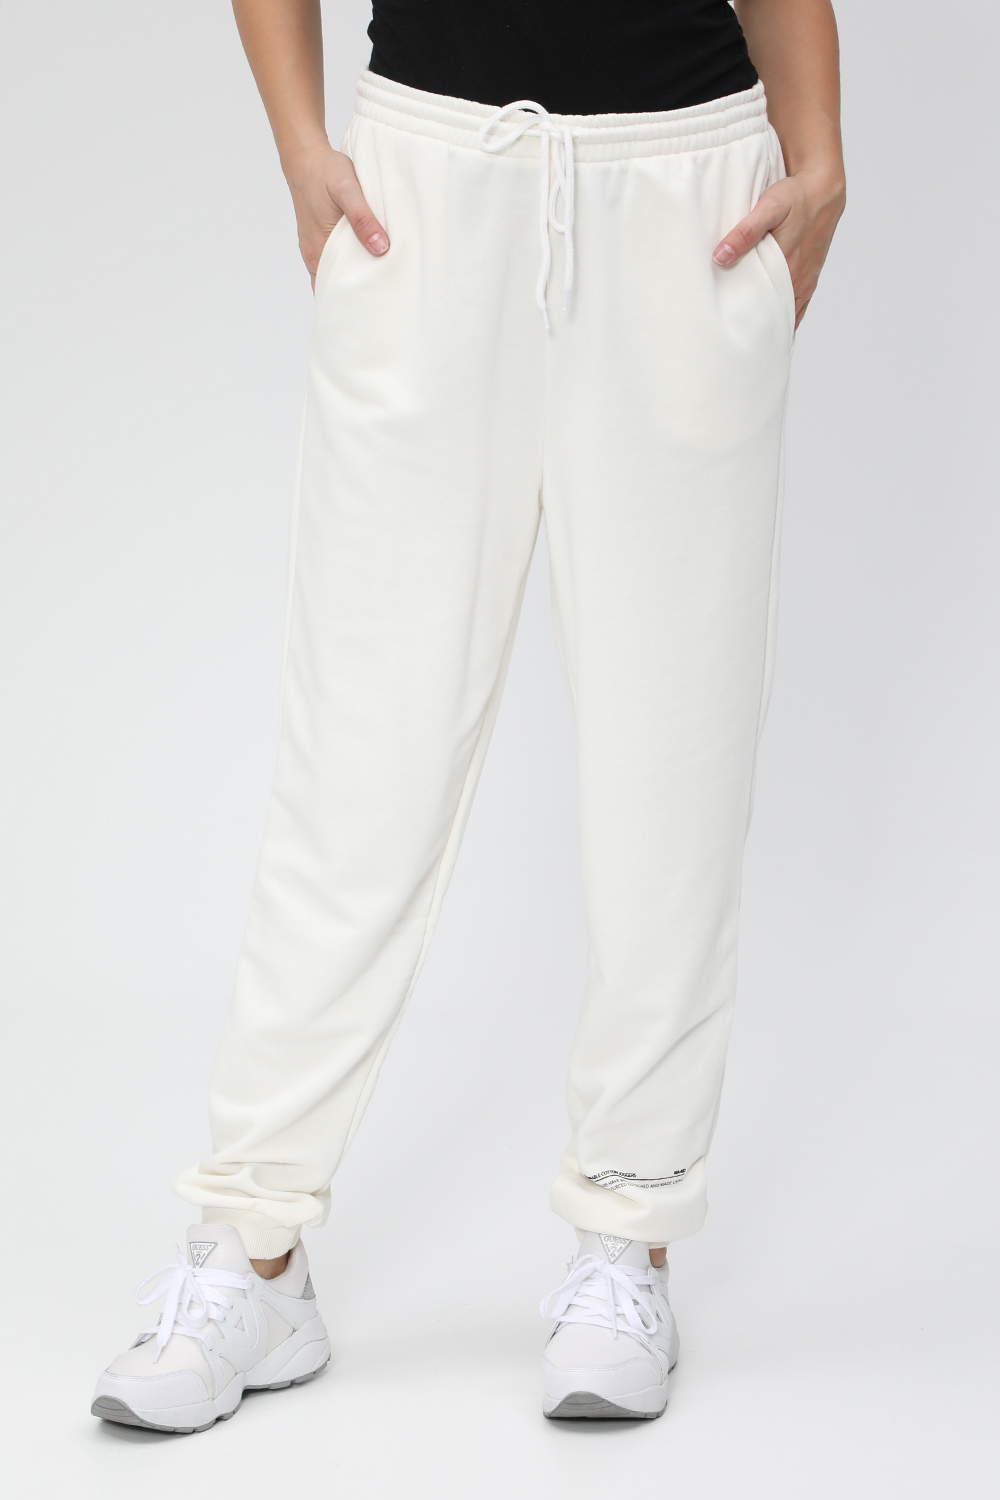 Γυναικεία/Ρούχα/Παντελόνια/Φόρμες NA-KD - Γυναικείο παντελόνι φόρμας NA-KD λευκό